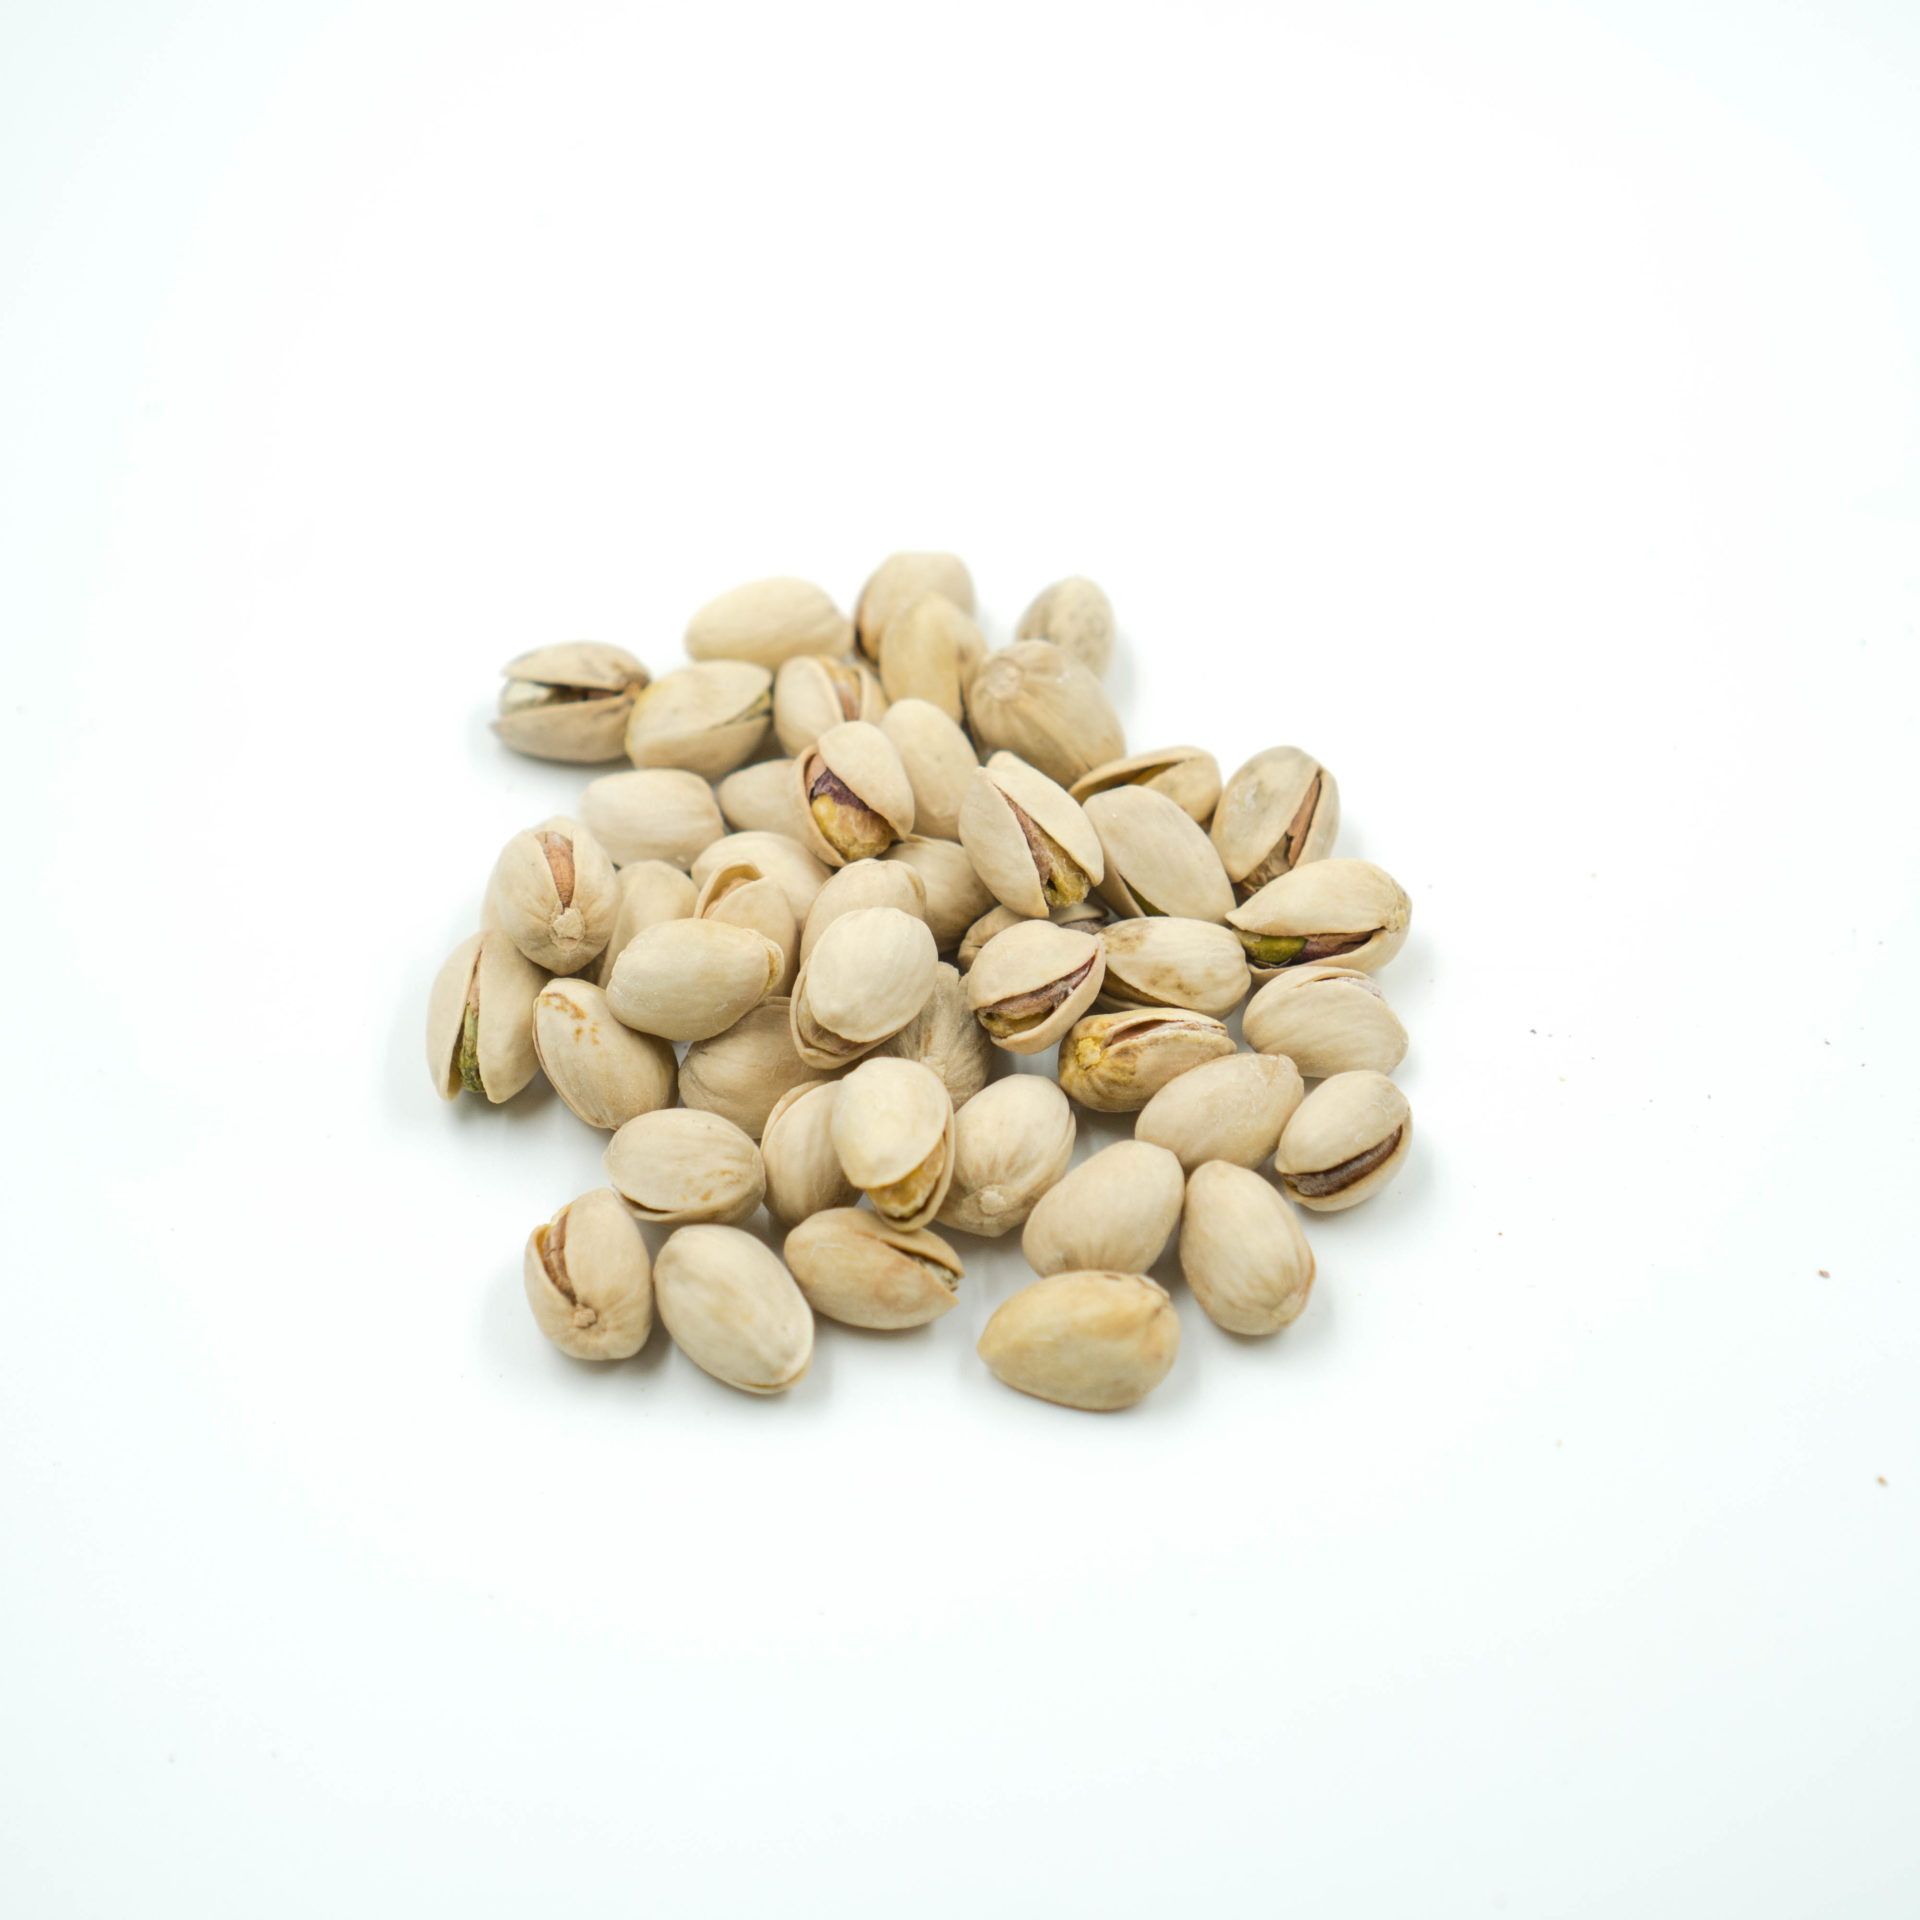 Plain Pistachio Nuts